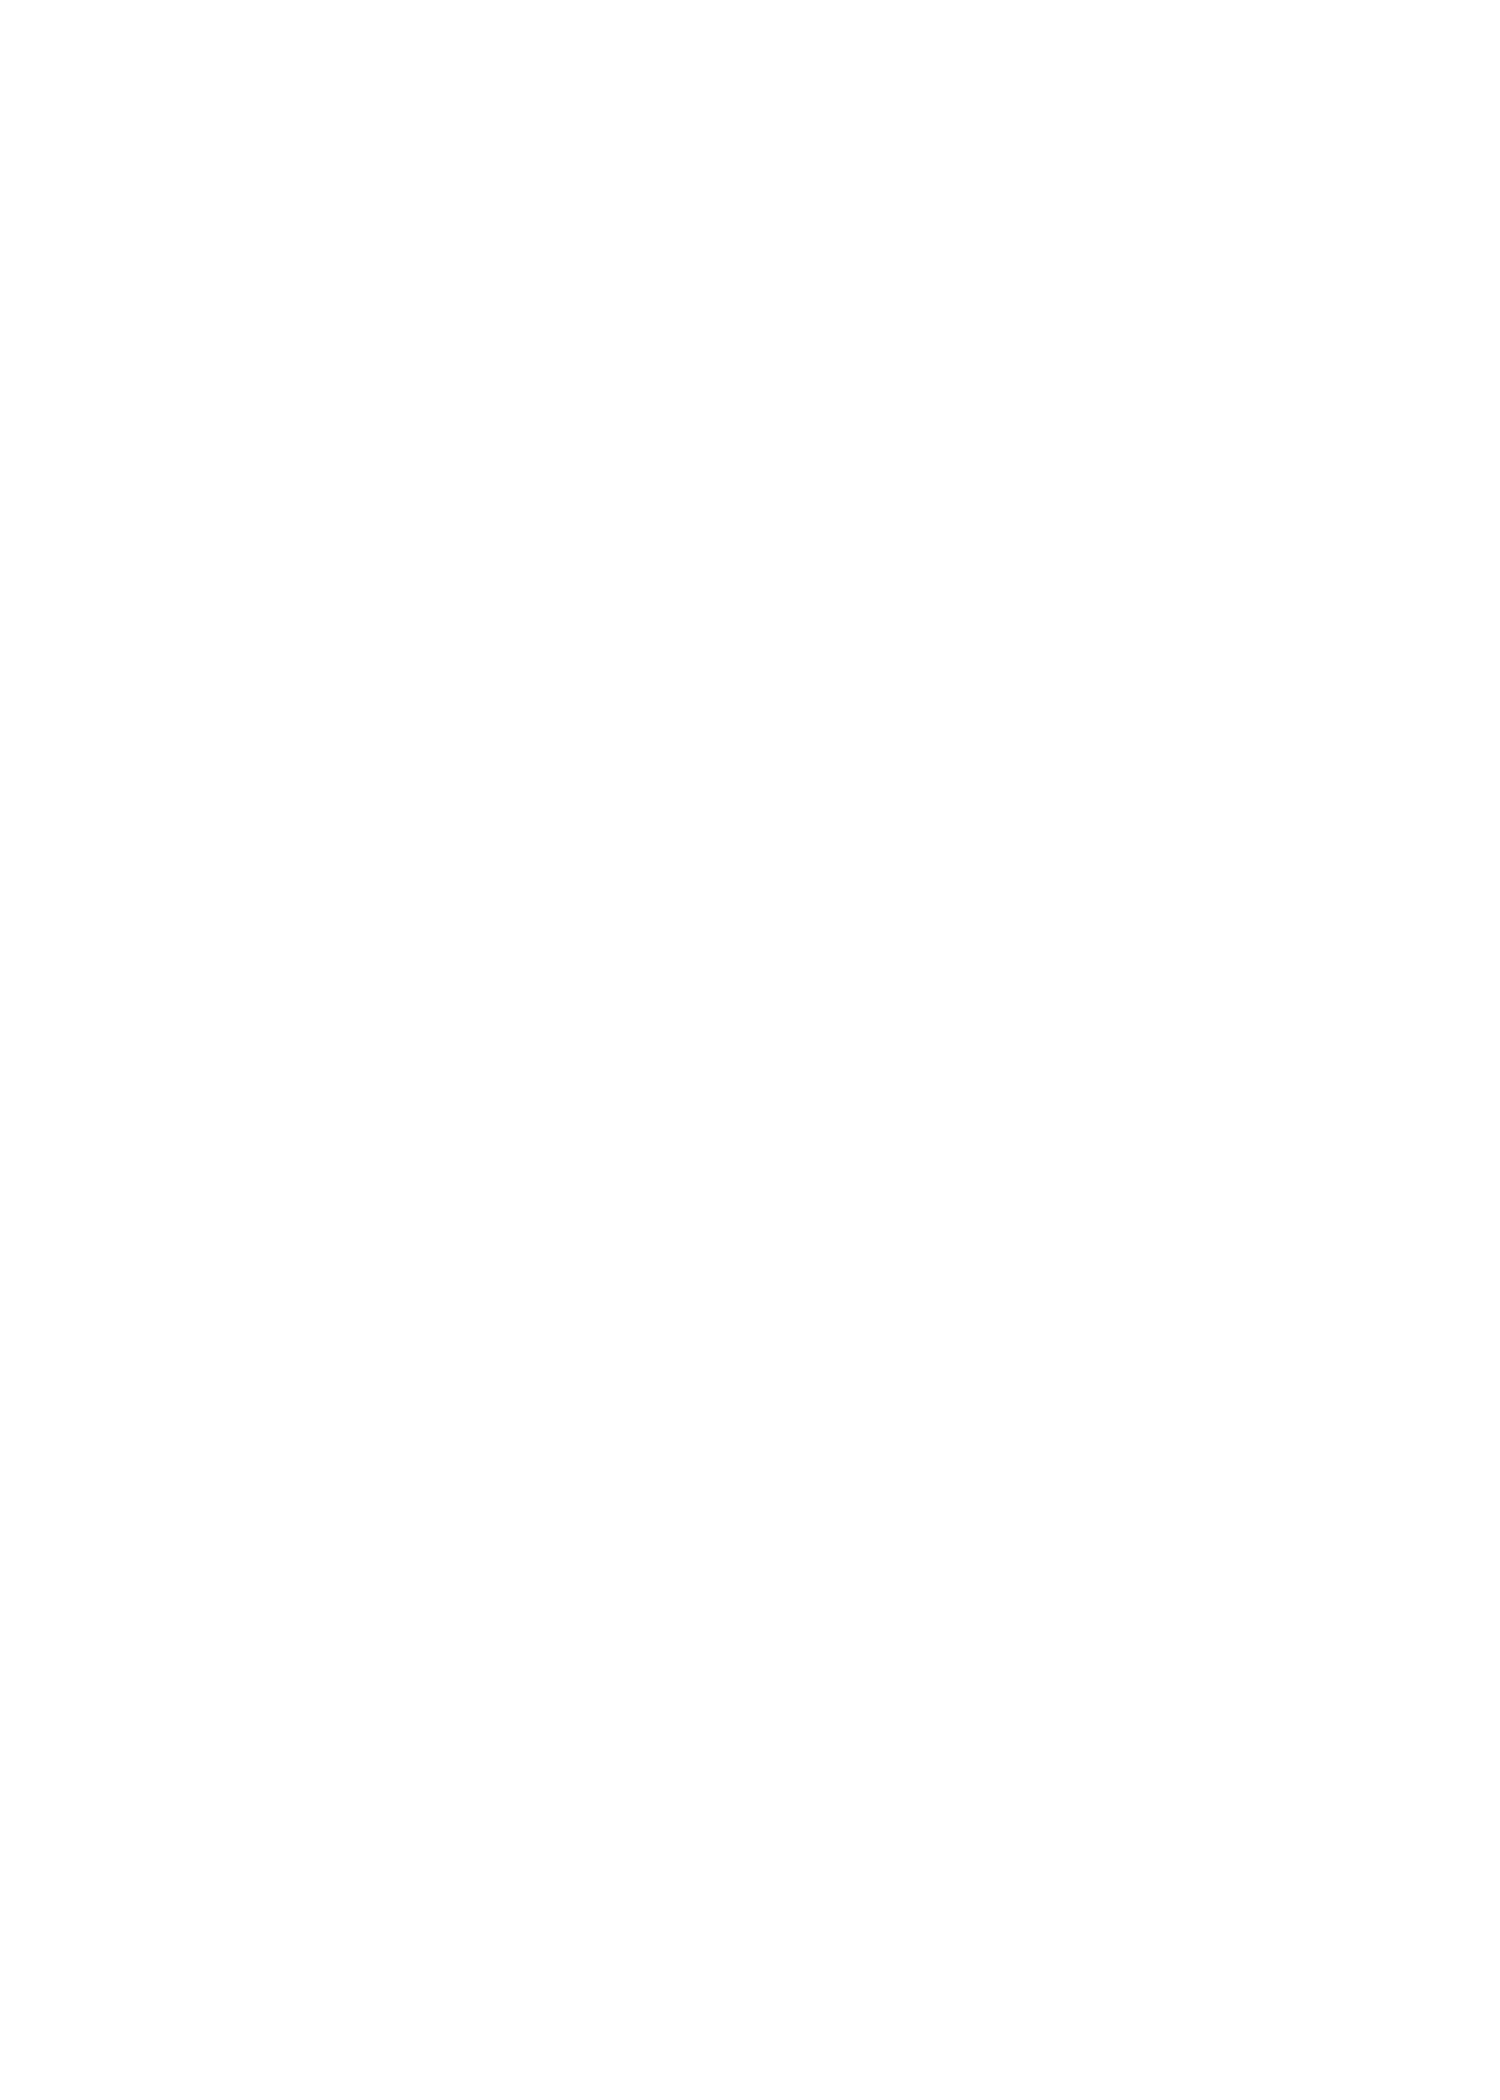 Sierra Pres